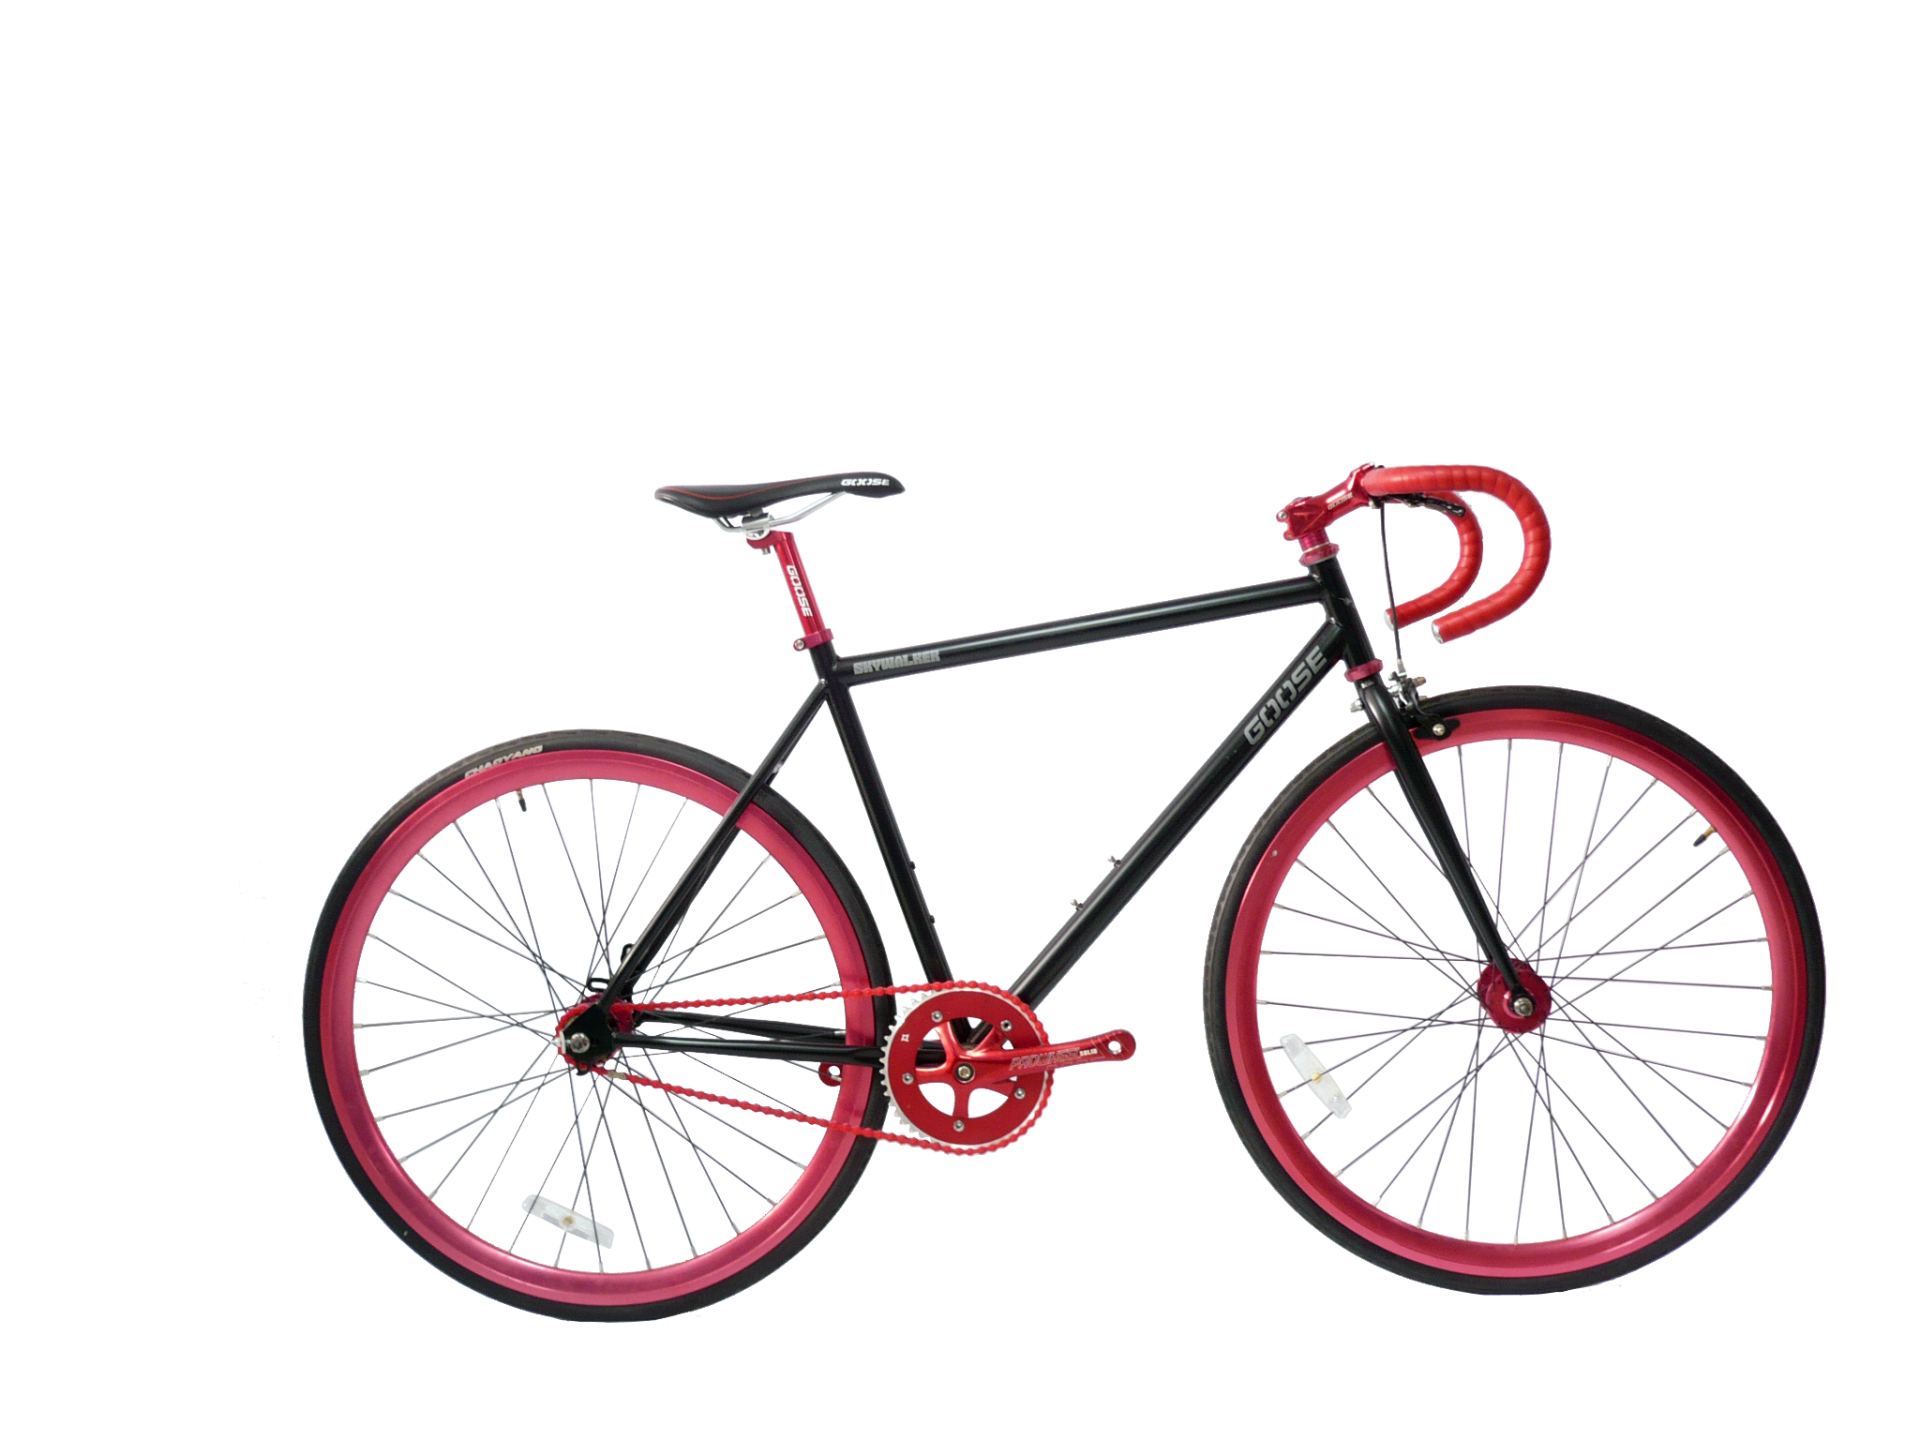 24 rear bike wheel